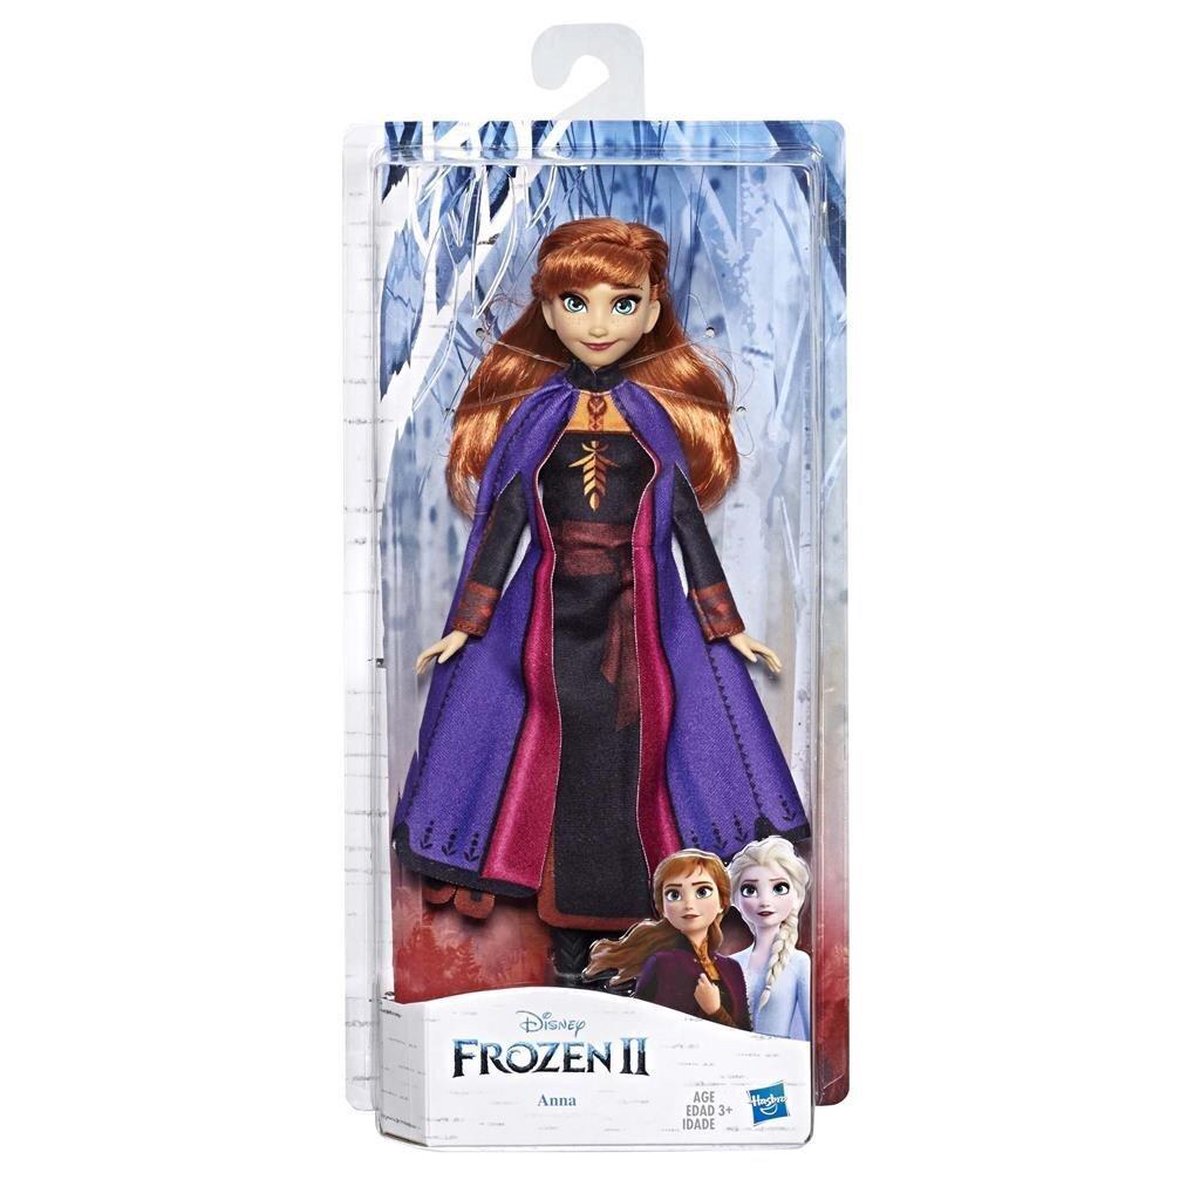 Disney Princesses - La Reine des Neiges - Y9980 - Poupée Mannequin - Pack  Personnages Frozen